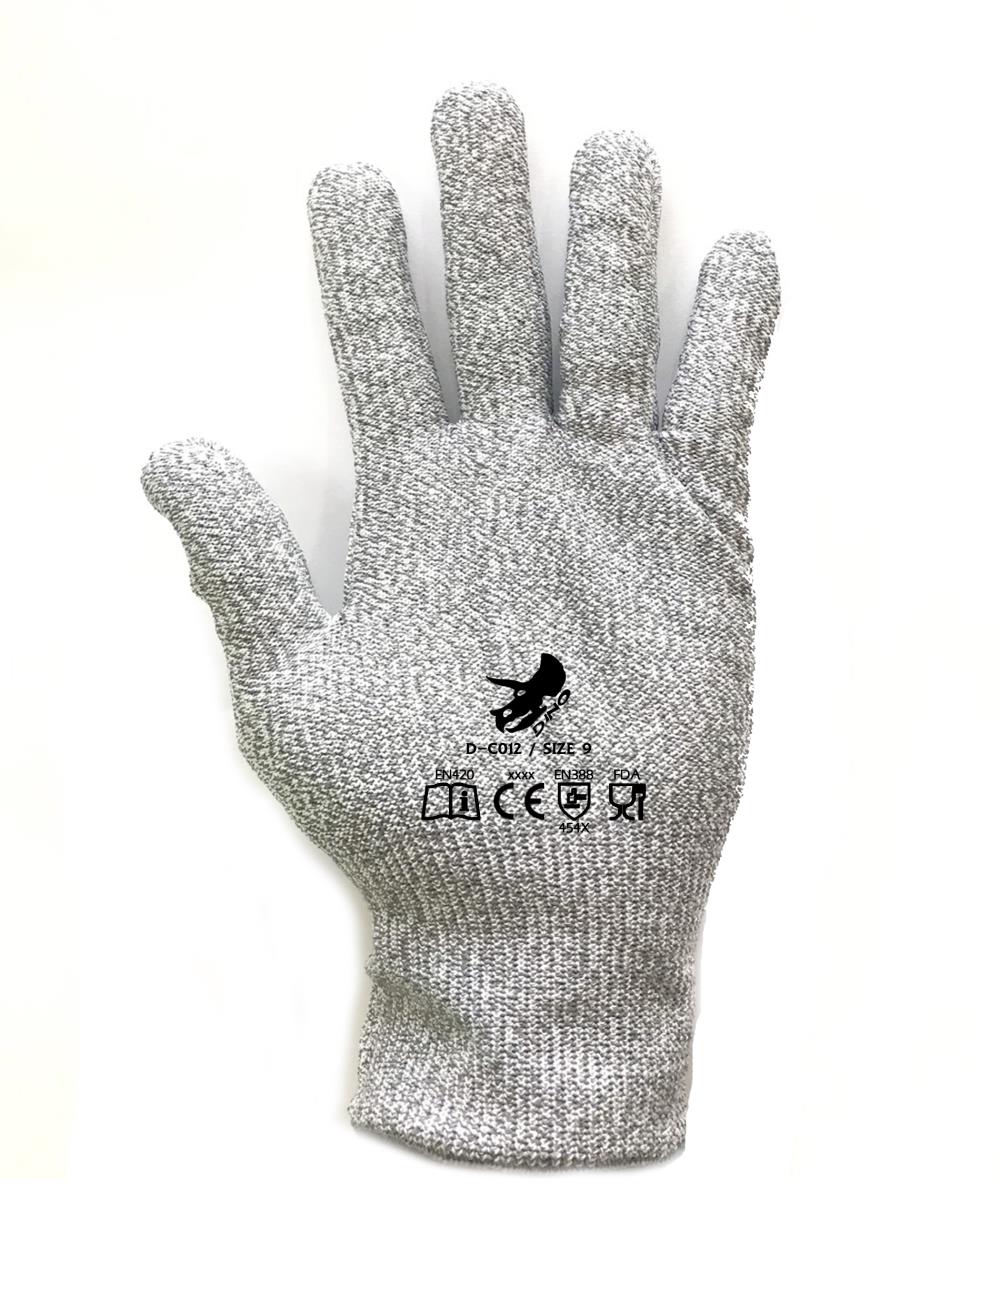 นำเข้า-ถุงมือป้องกันบาด Dyneema,ถุงมือกันบาด,DINO,Plant and Facility Equipment/Safety Equipment/Gloves & Hand Protection